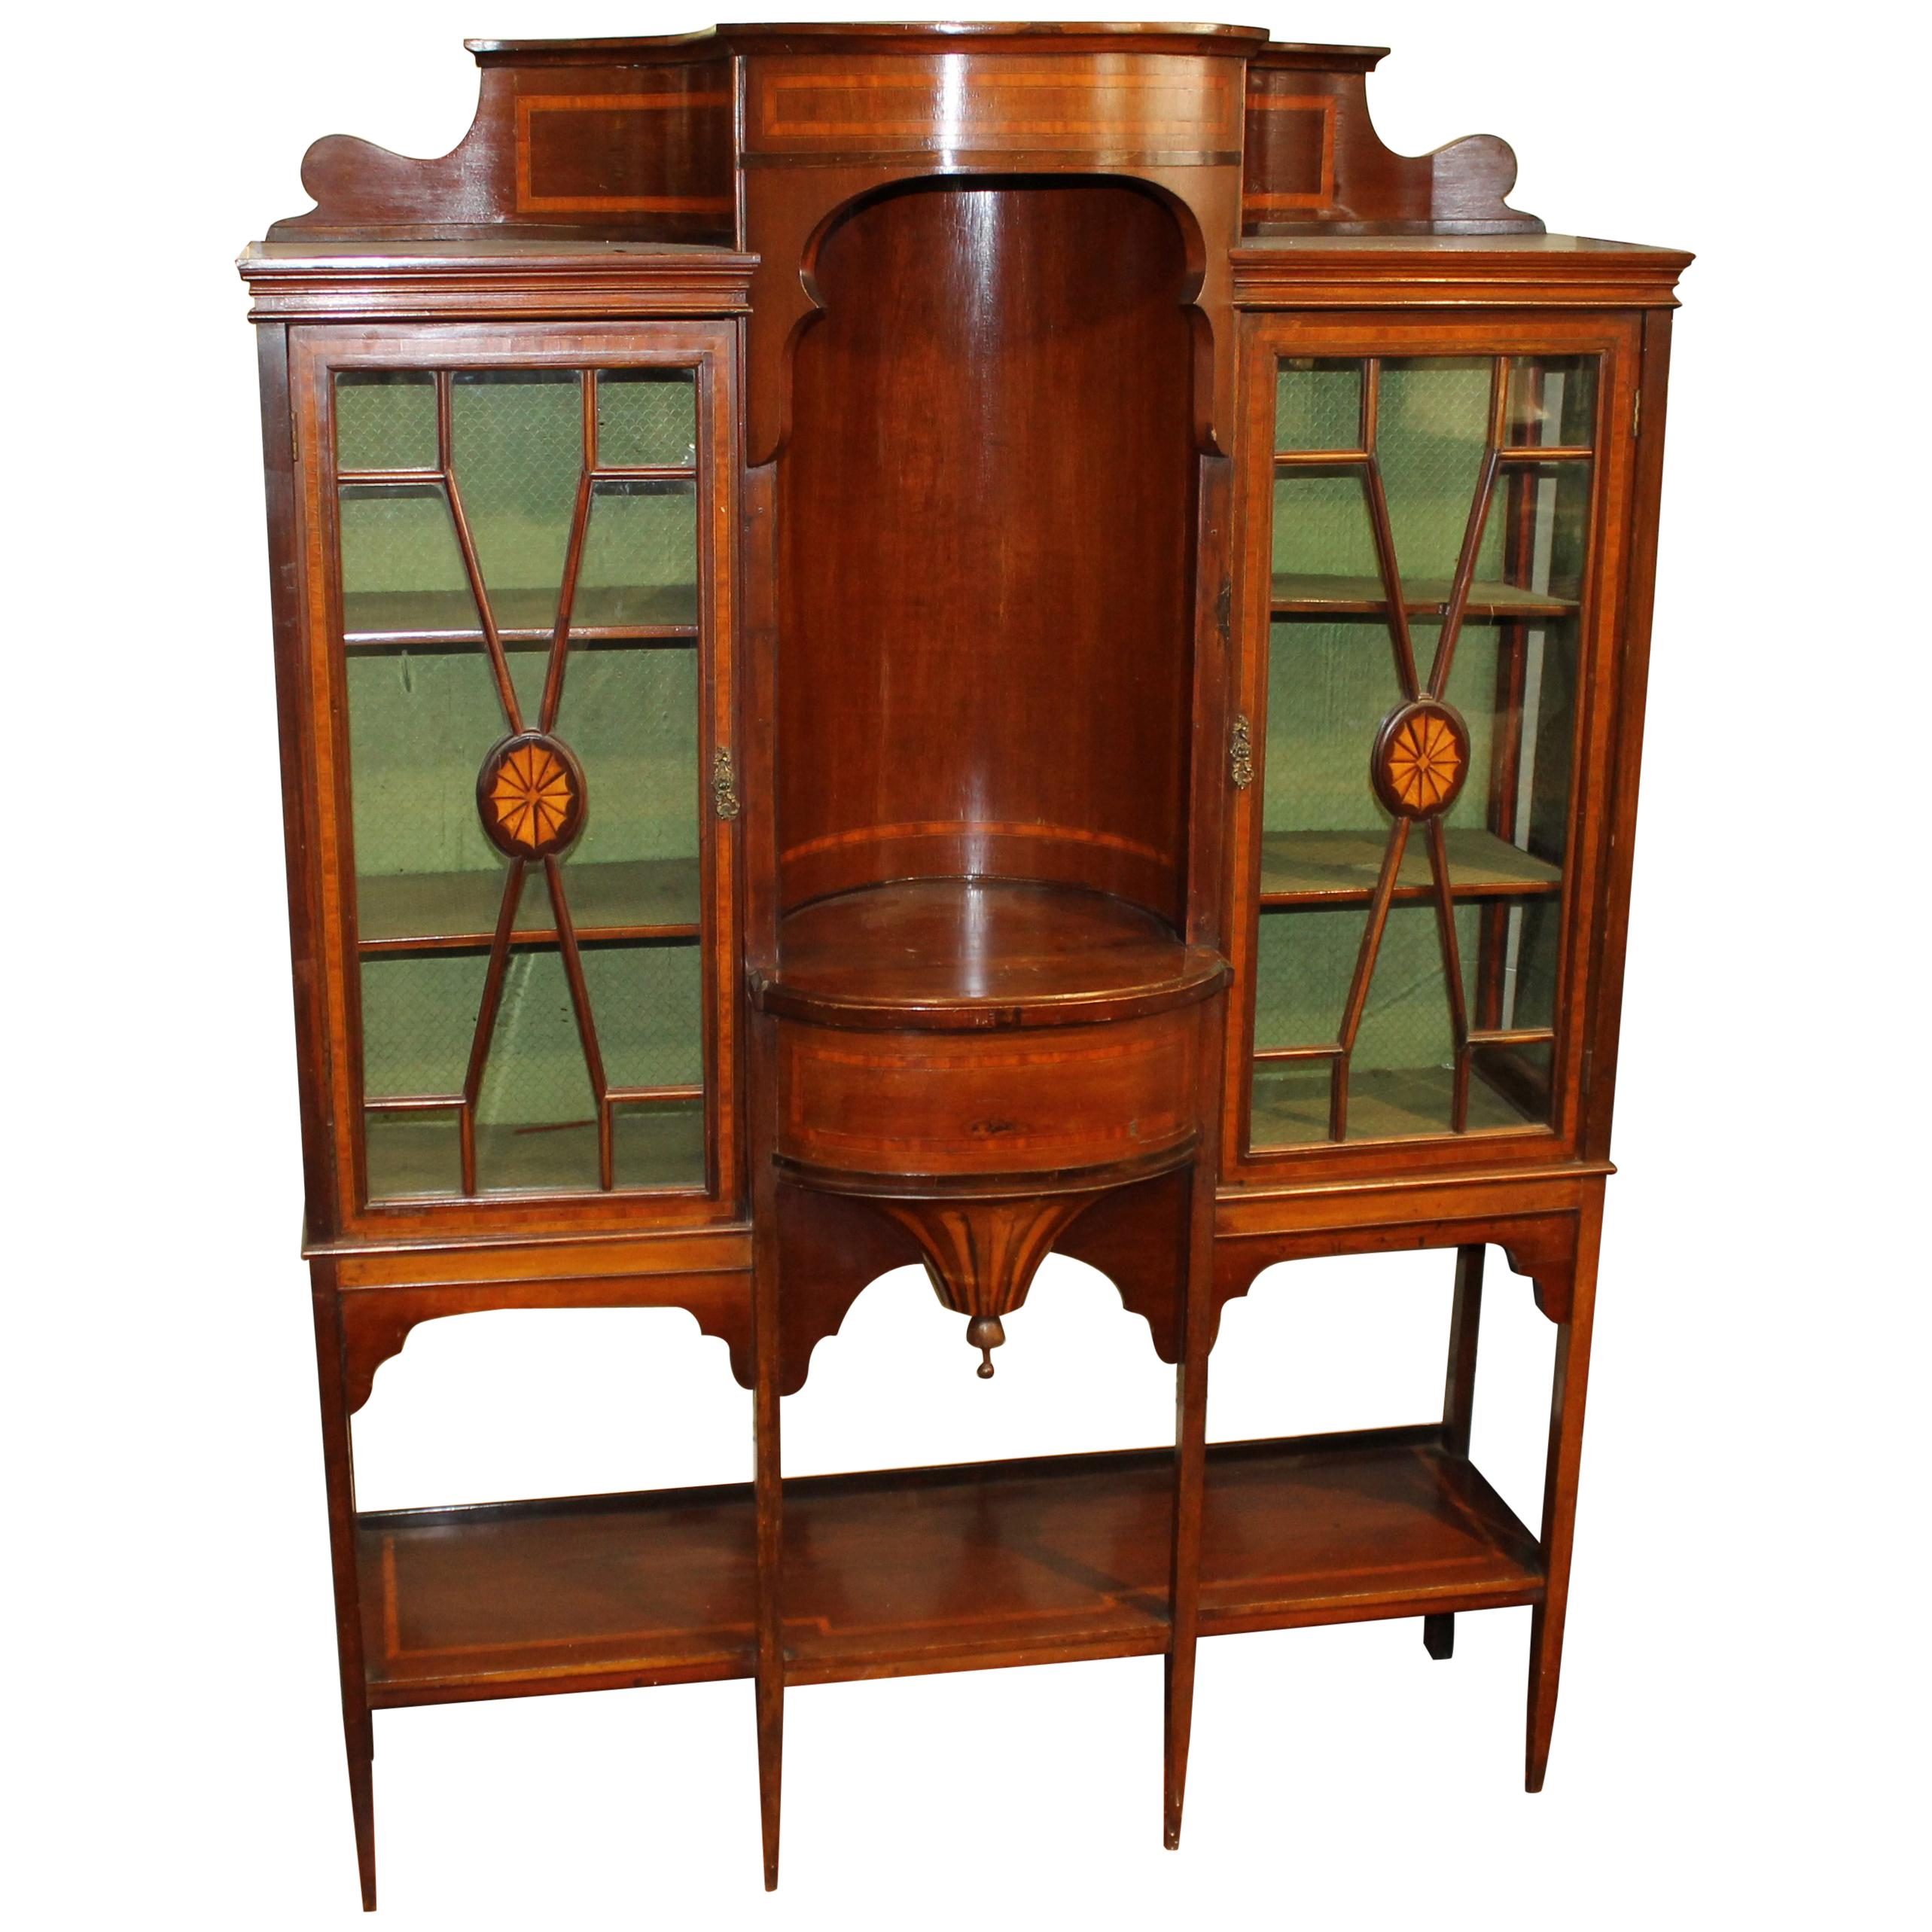 Antique English Satinwood Inlaid Mahogany Edwardian "Adam" Style Display Cabinet